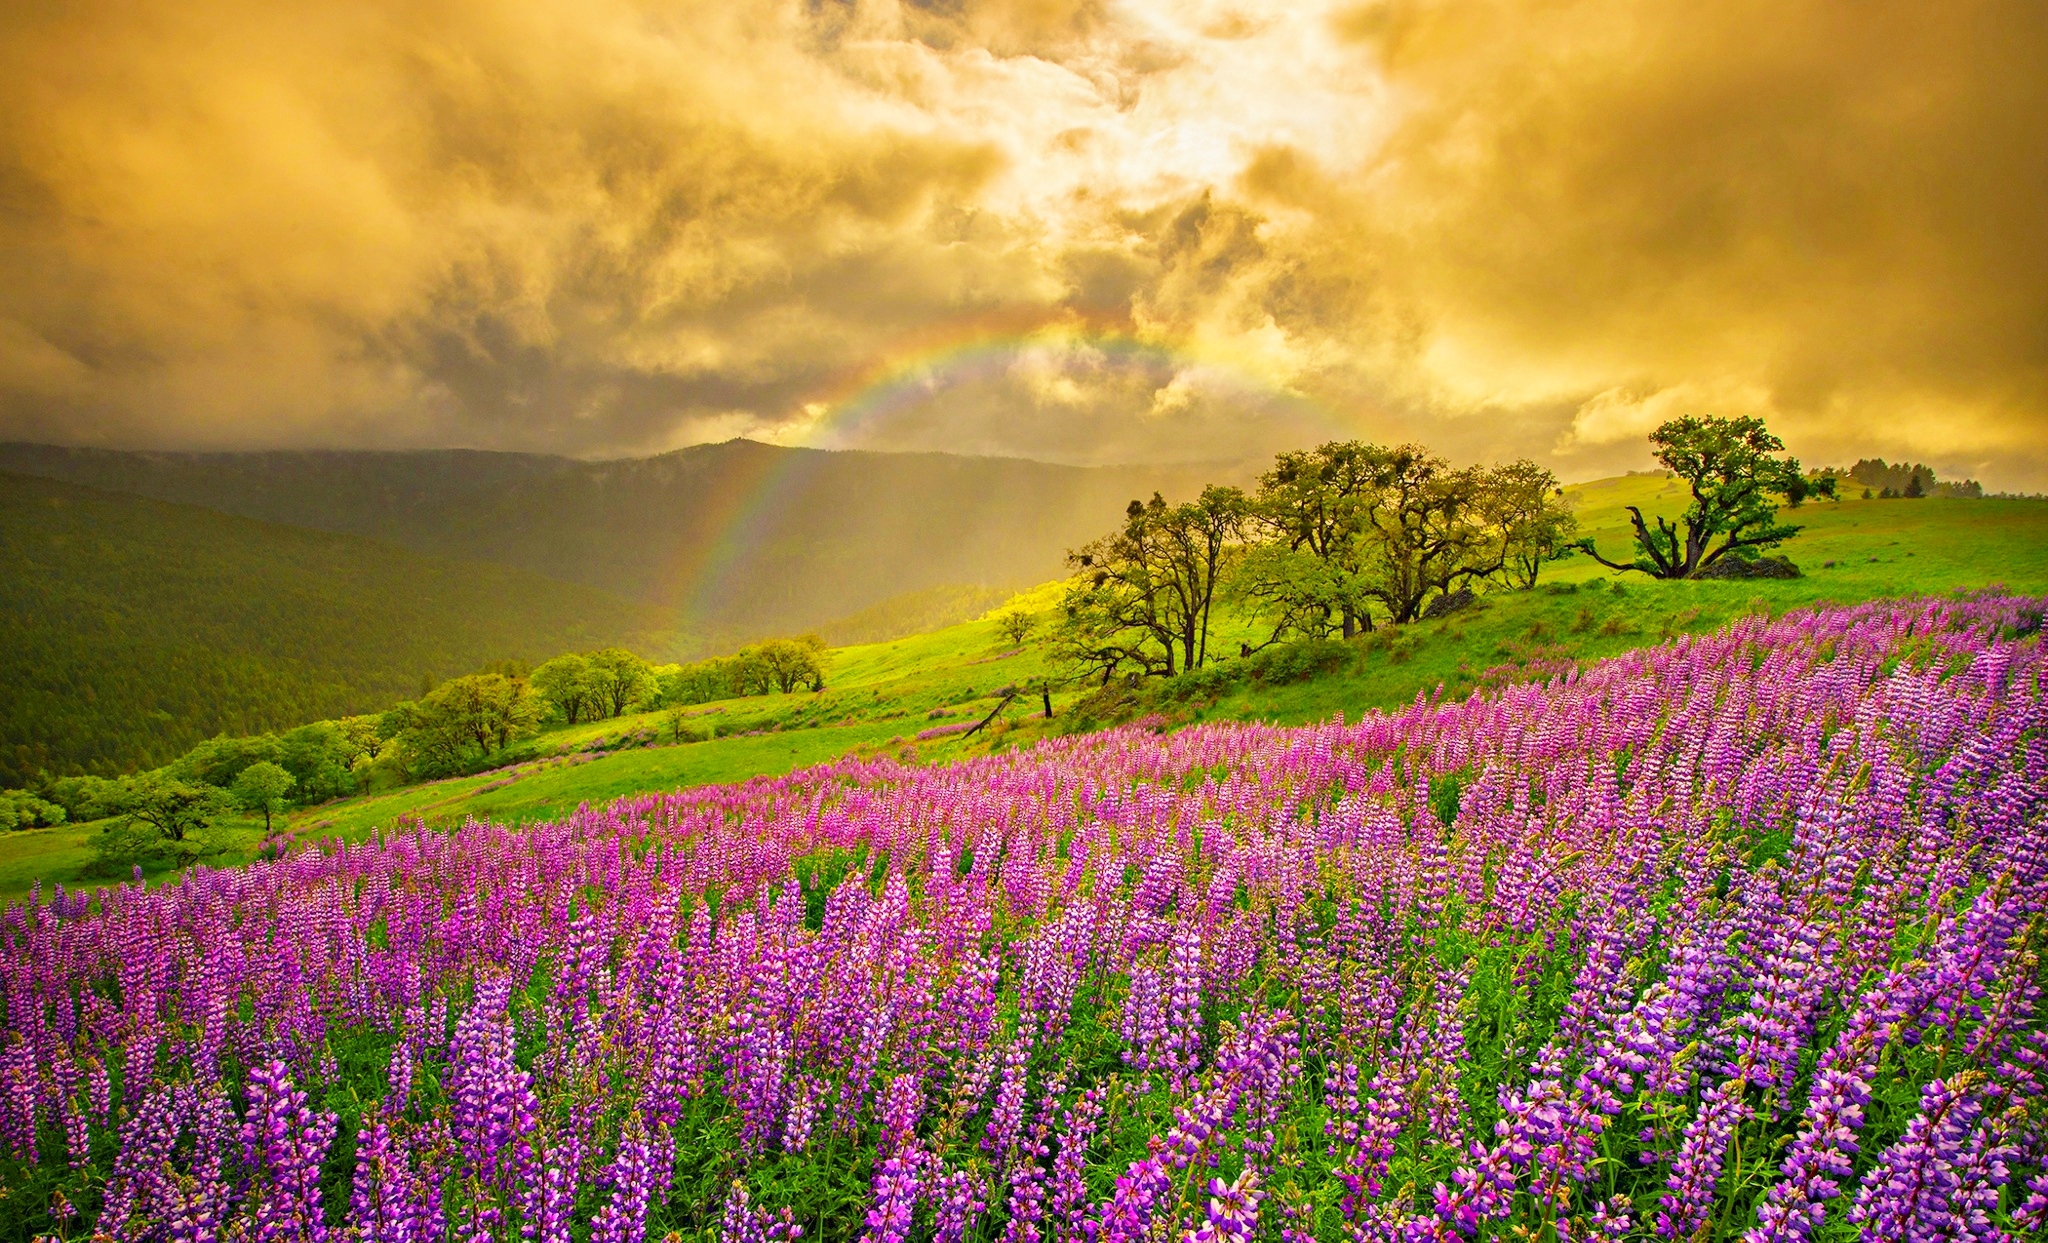 rainbow, earth, cloud, field, flower, landscape, lupine, purple flower, spring, sunset, tree